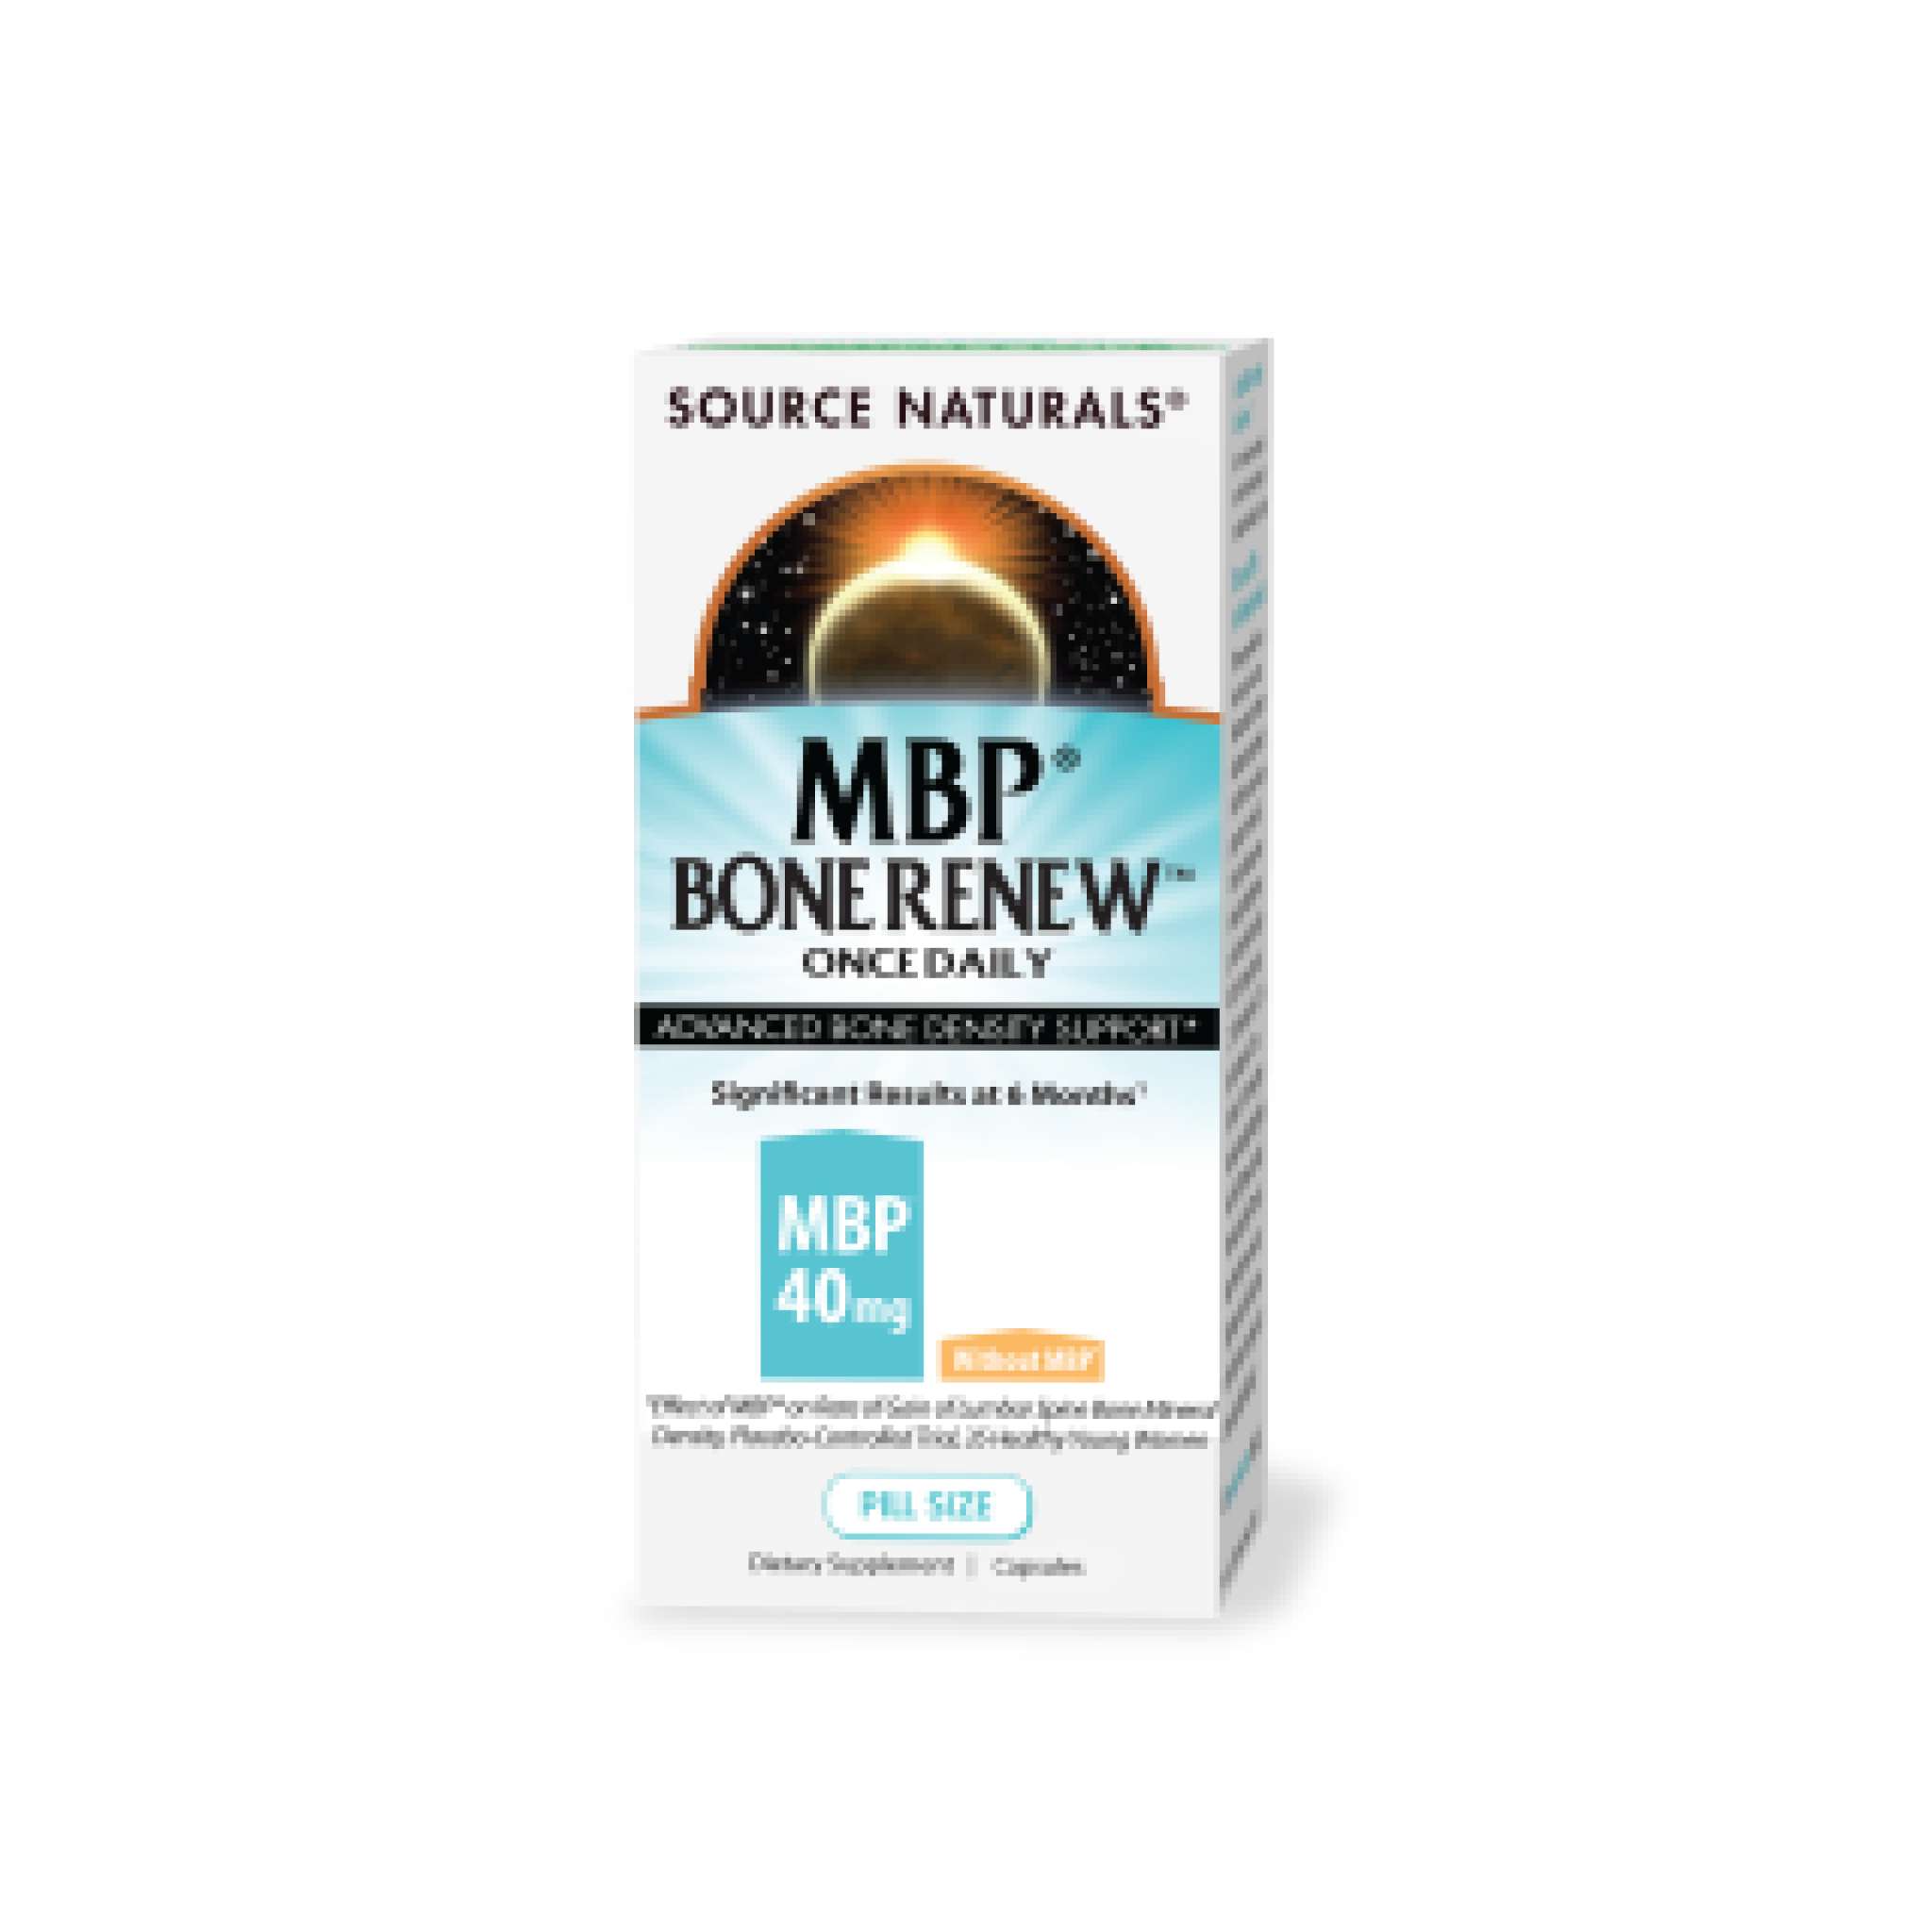 Source Naturals - Mbp Bone Renew